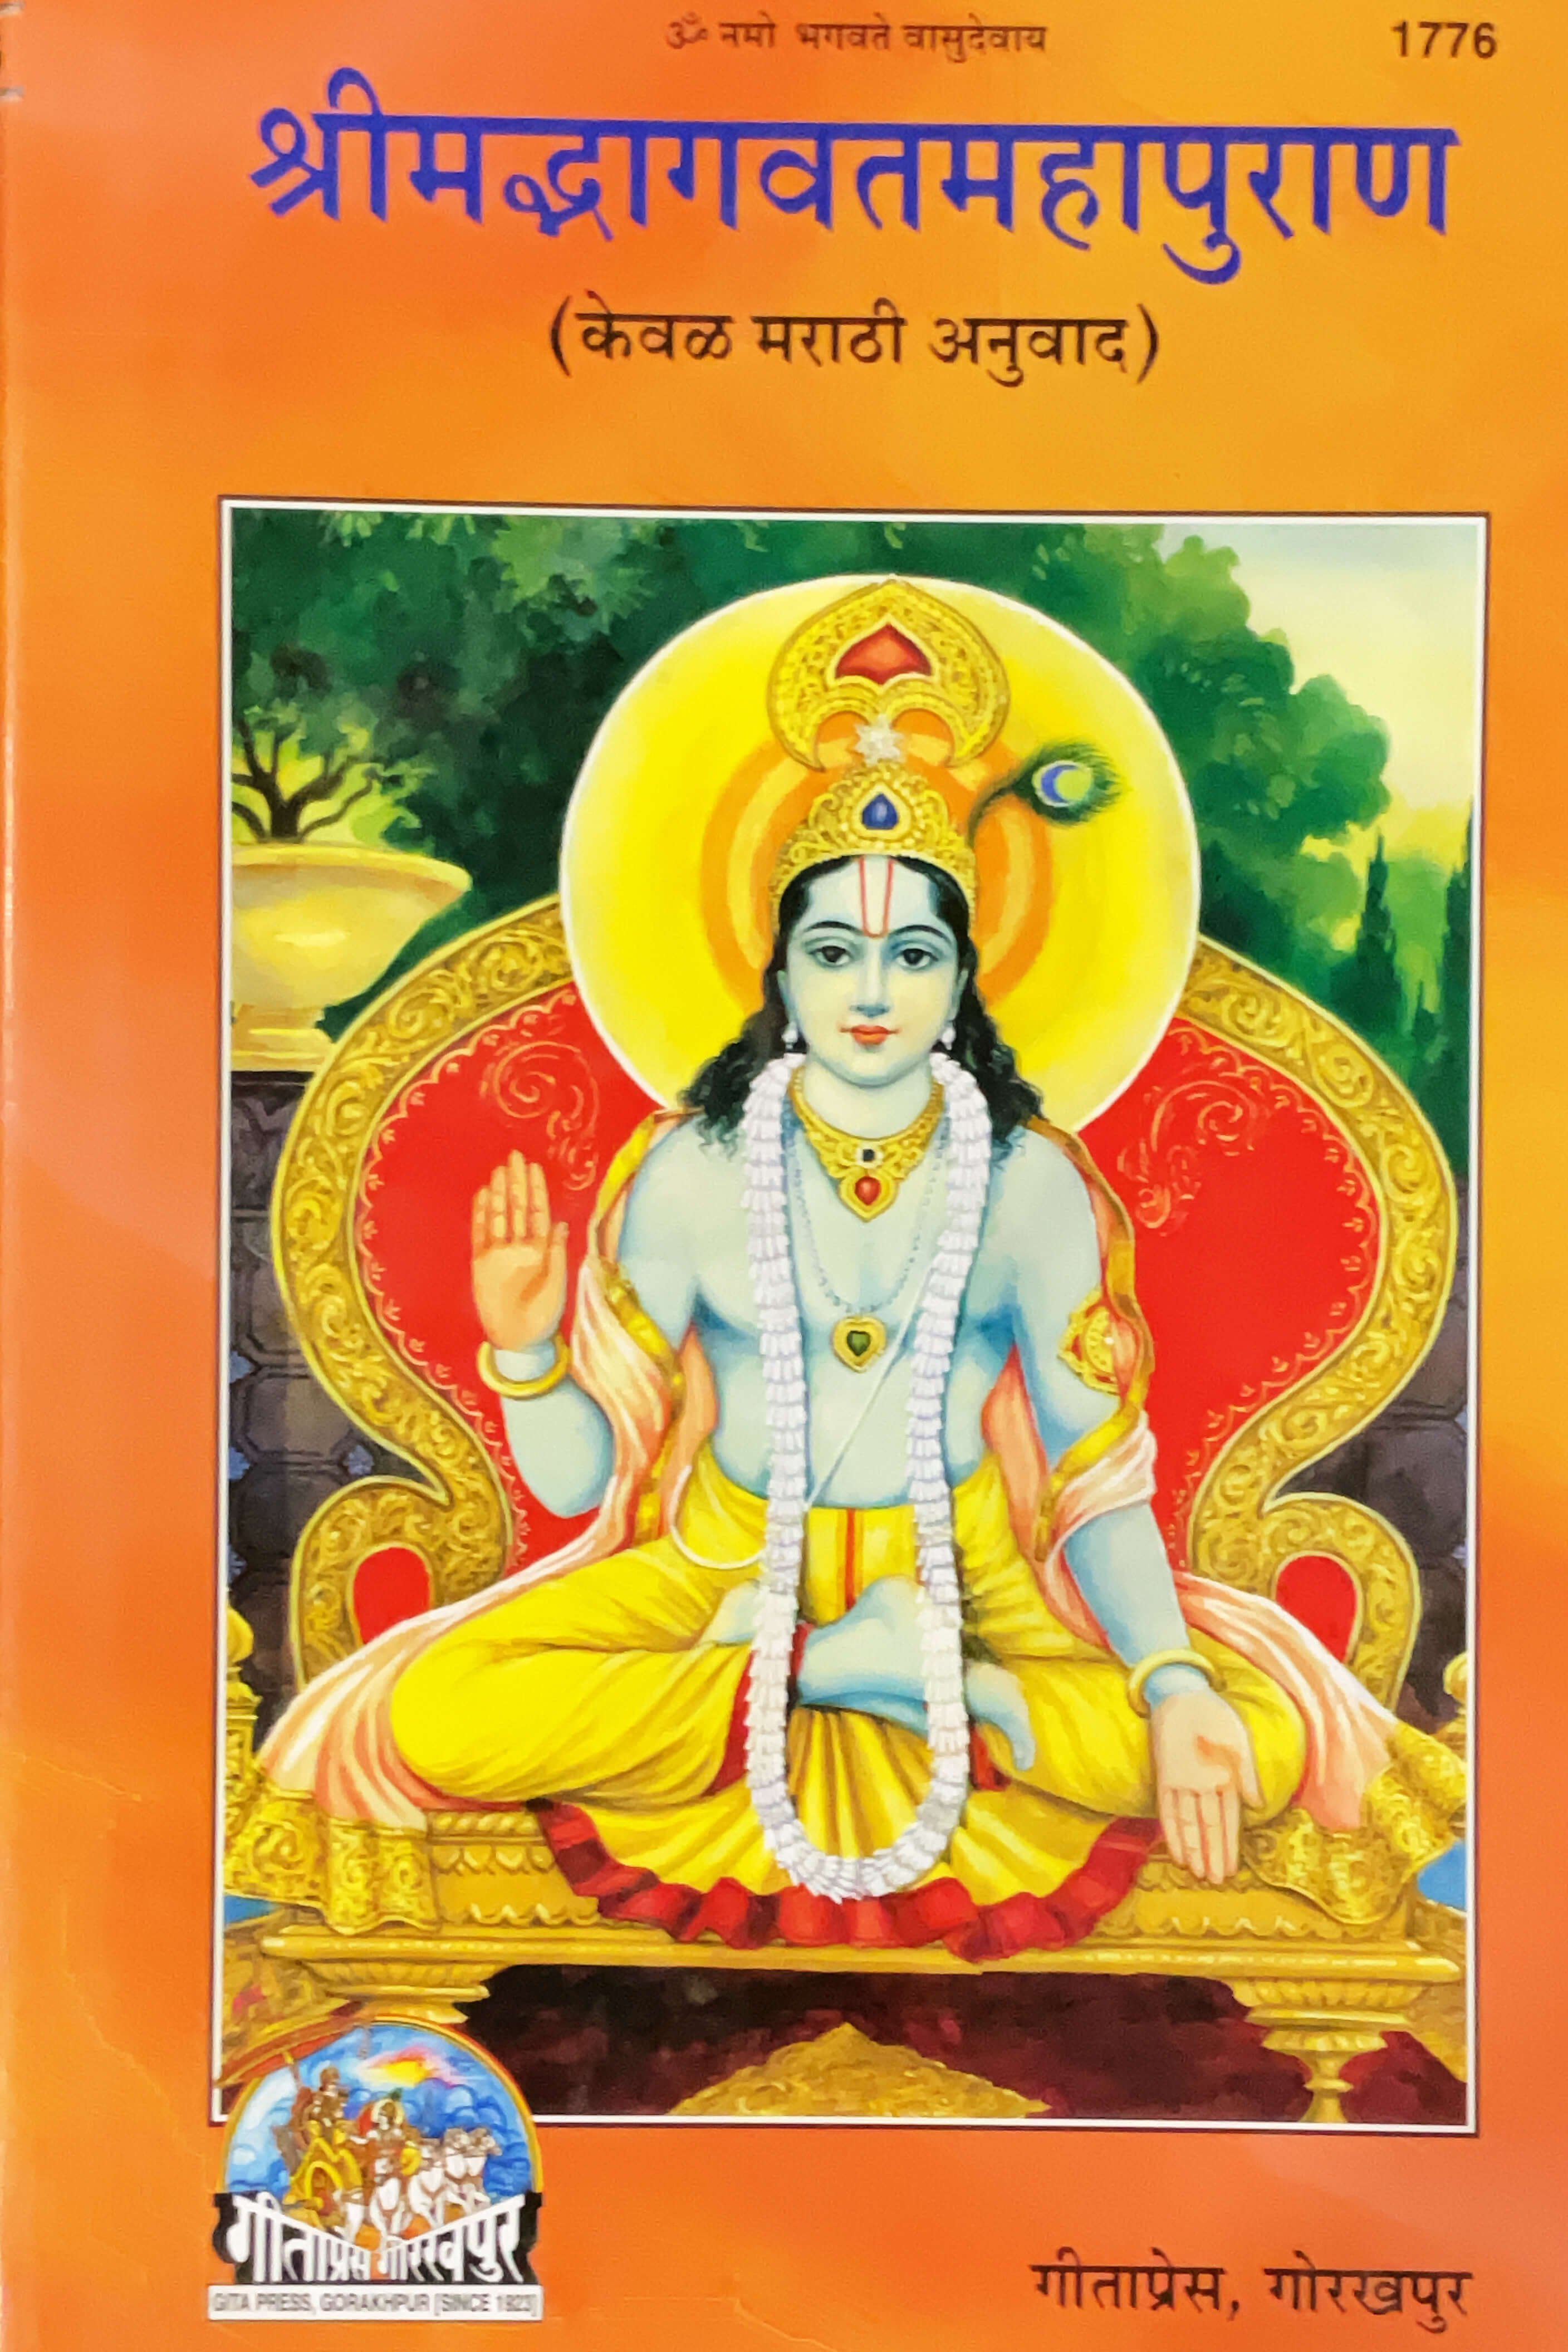 SANATAN    Bhagavat Puran (Marathi) by Gita Press